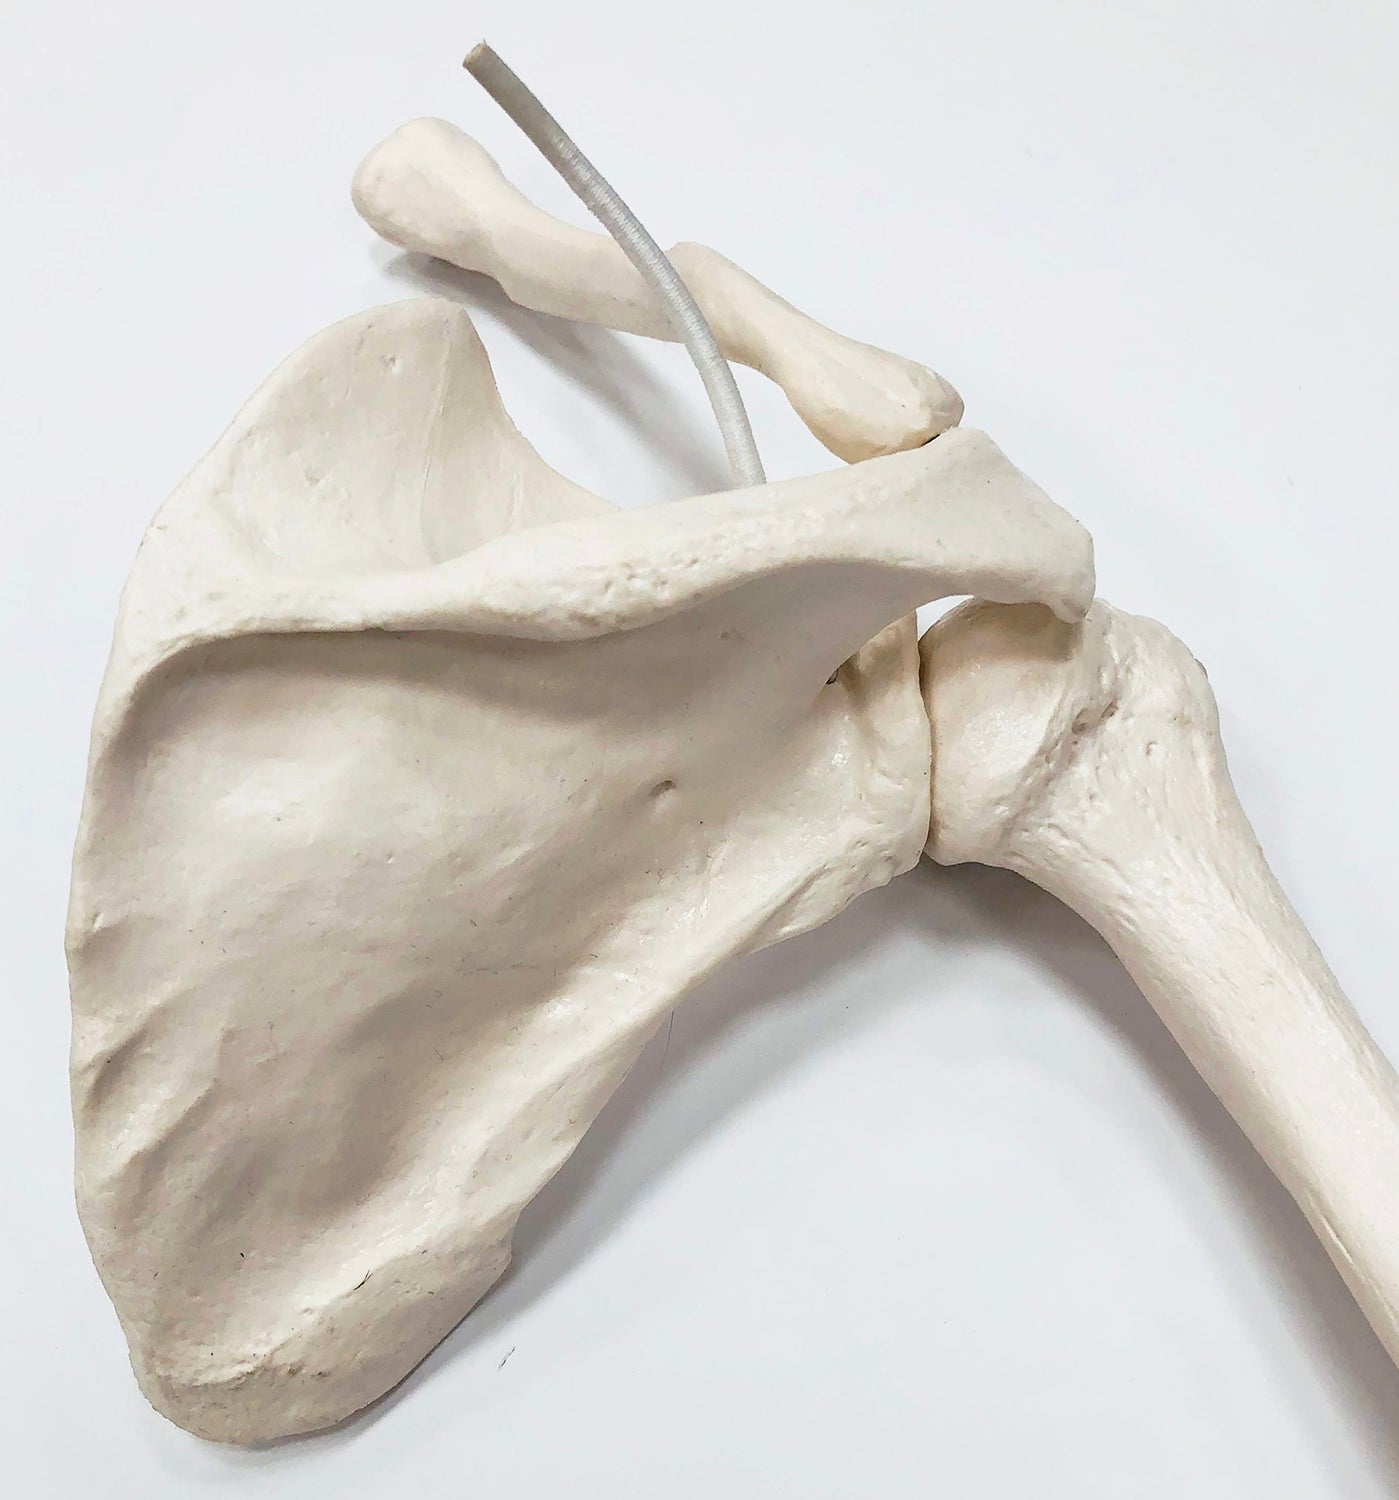 Skeletdel som viser hele højre arm med et meget bevægeligt skulderled (inkl. skulderblad og kraveben)